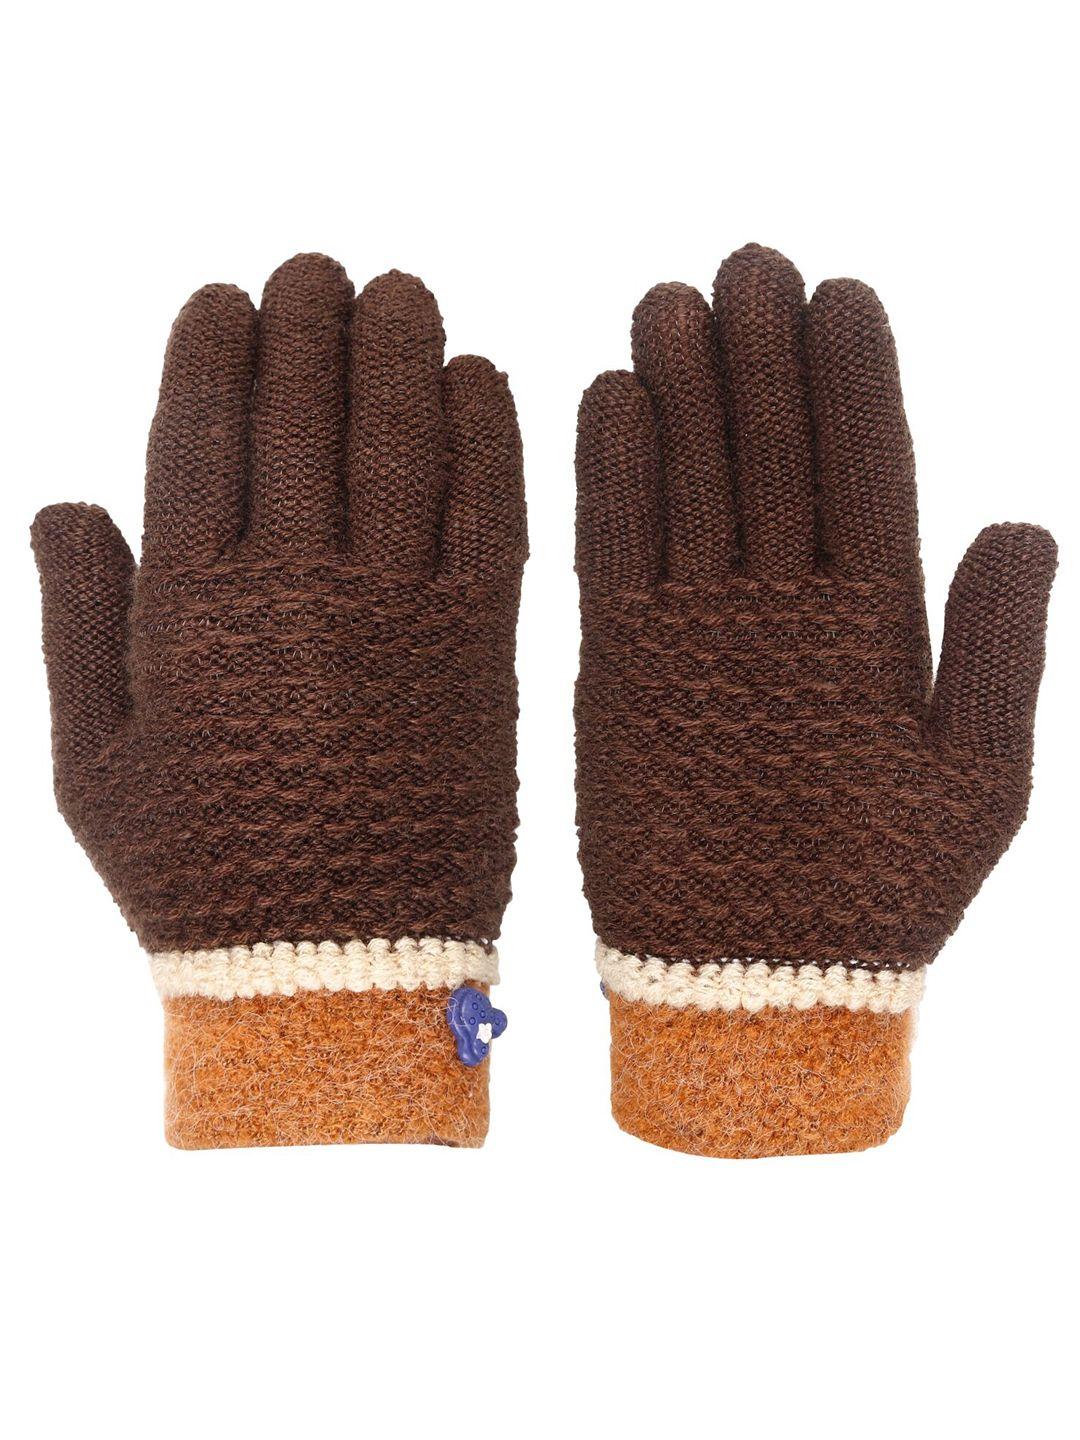 fabseasons kids patterned winter gloves